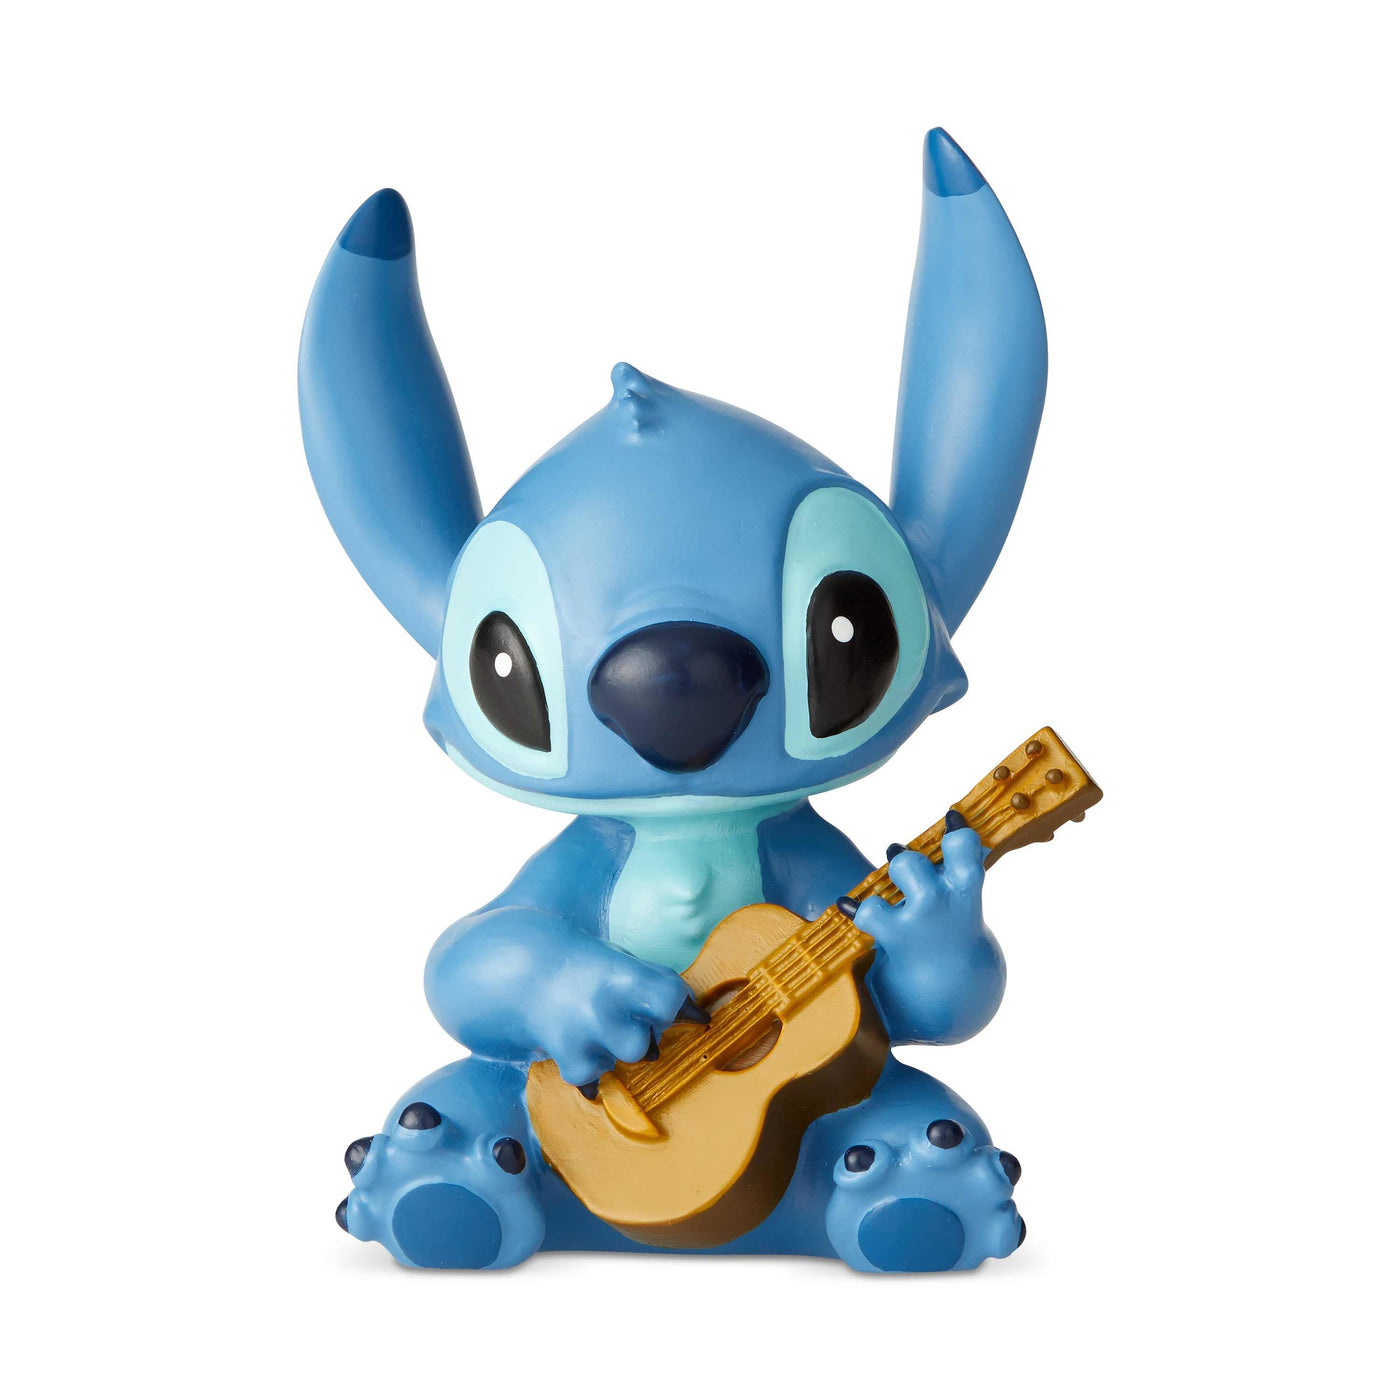 Disney Showcase Stitch with Guitar Mini Figurine New with Box